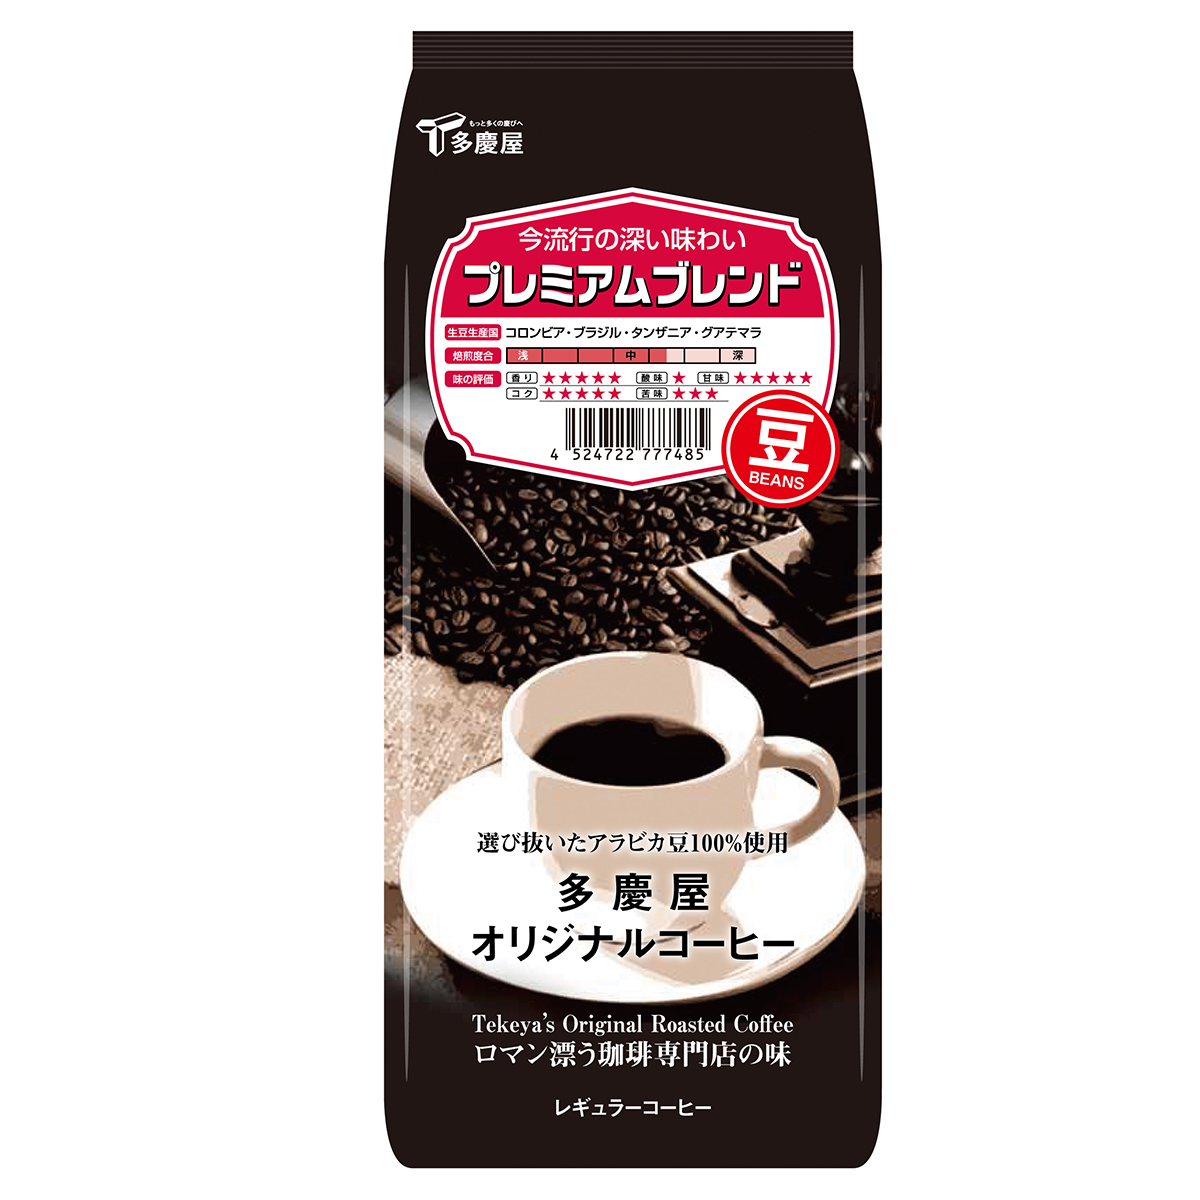 プレミアムブレンド豆150g　多慶屋オリジナルコーヒーコーヒー豆レギュラーコーヒー